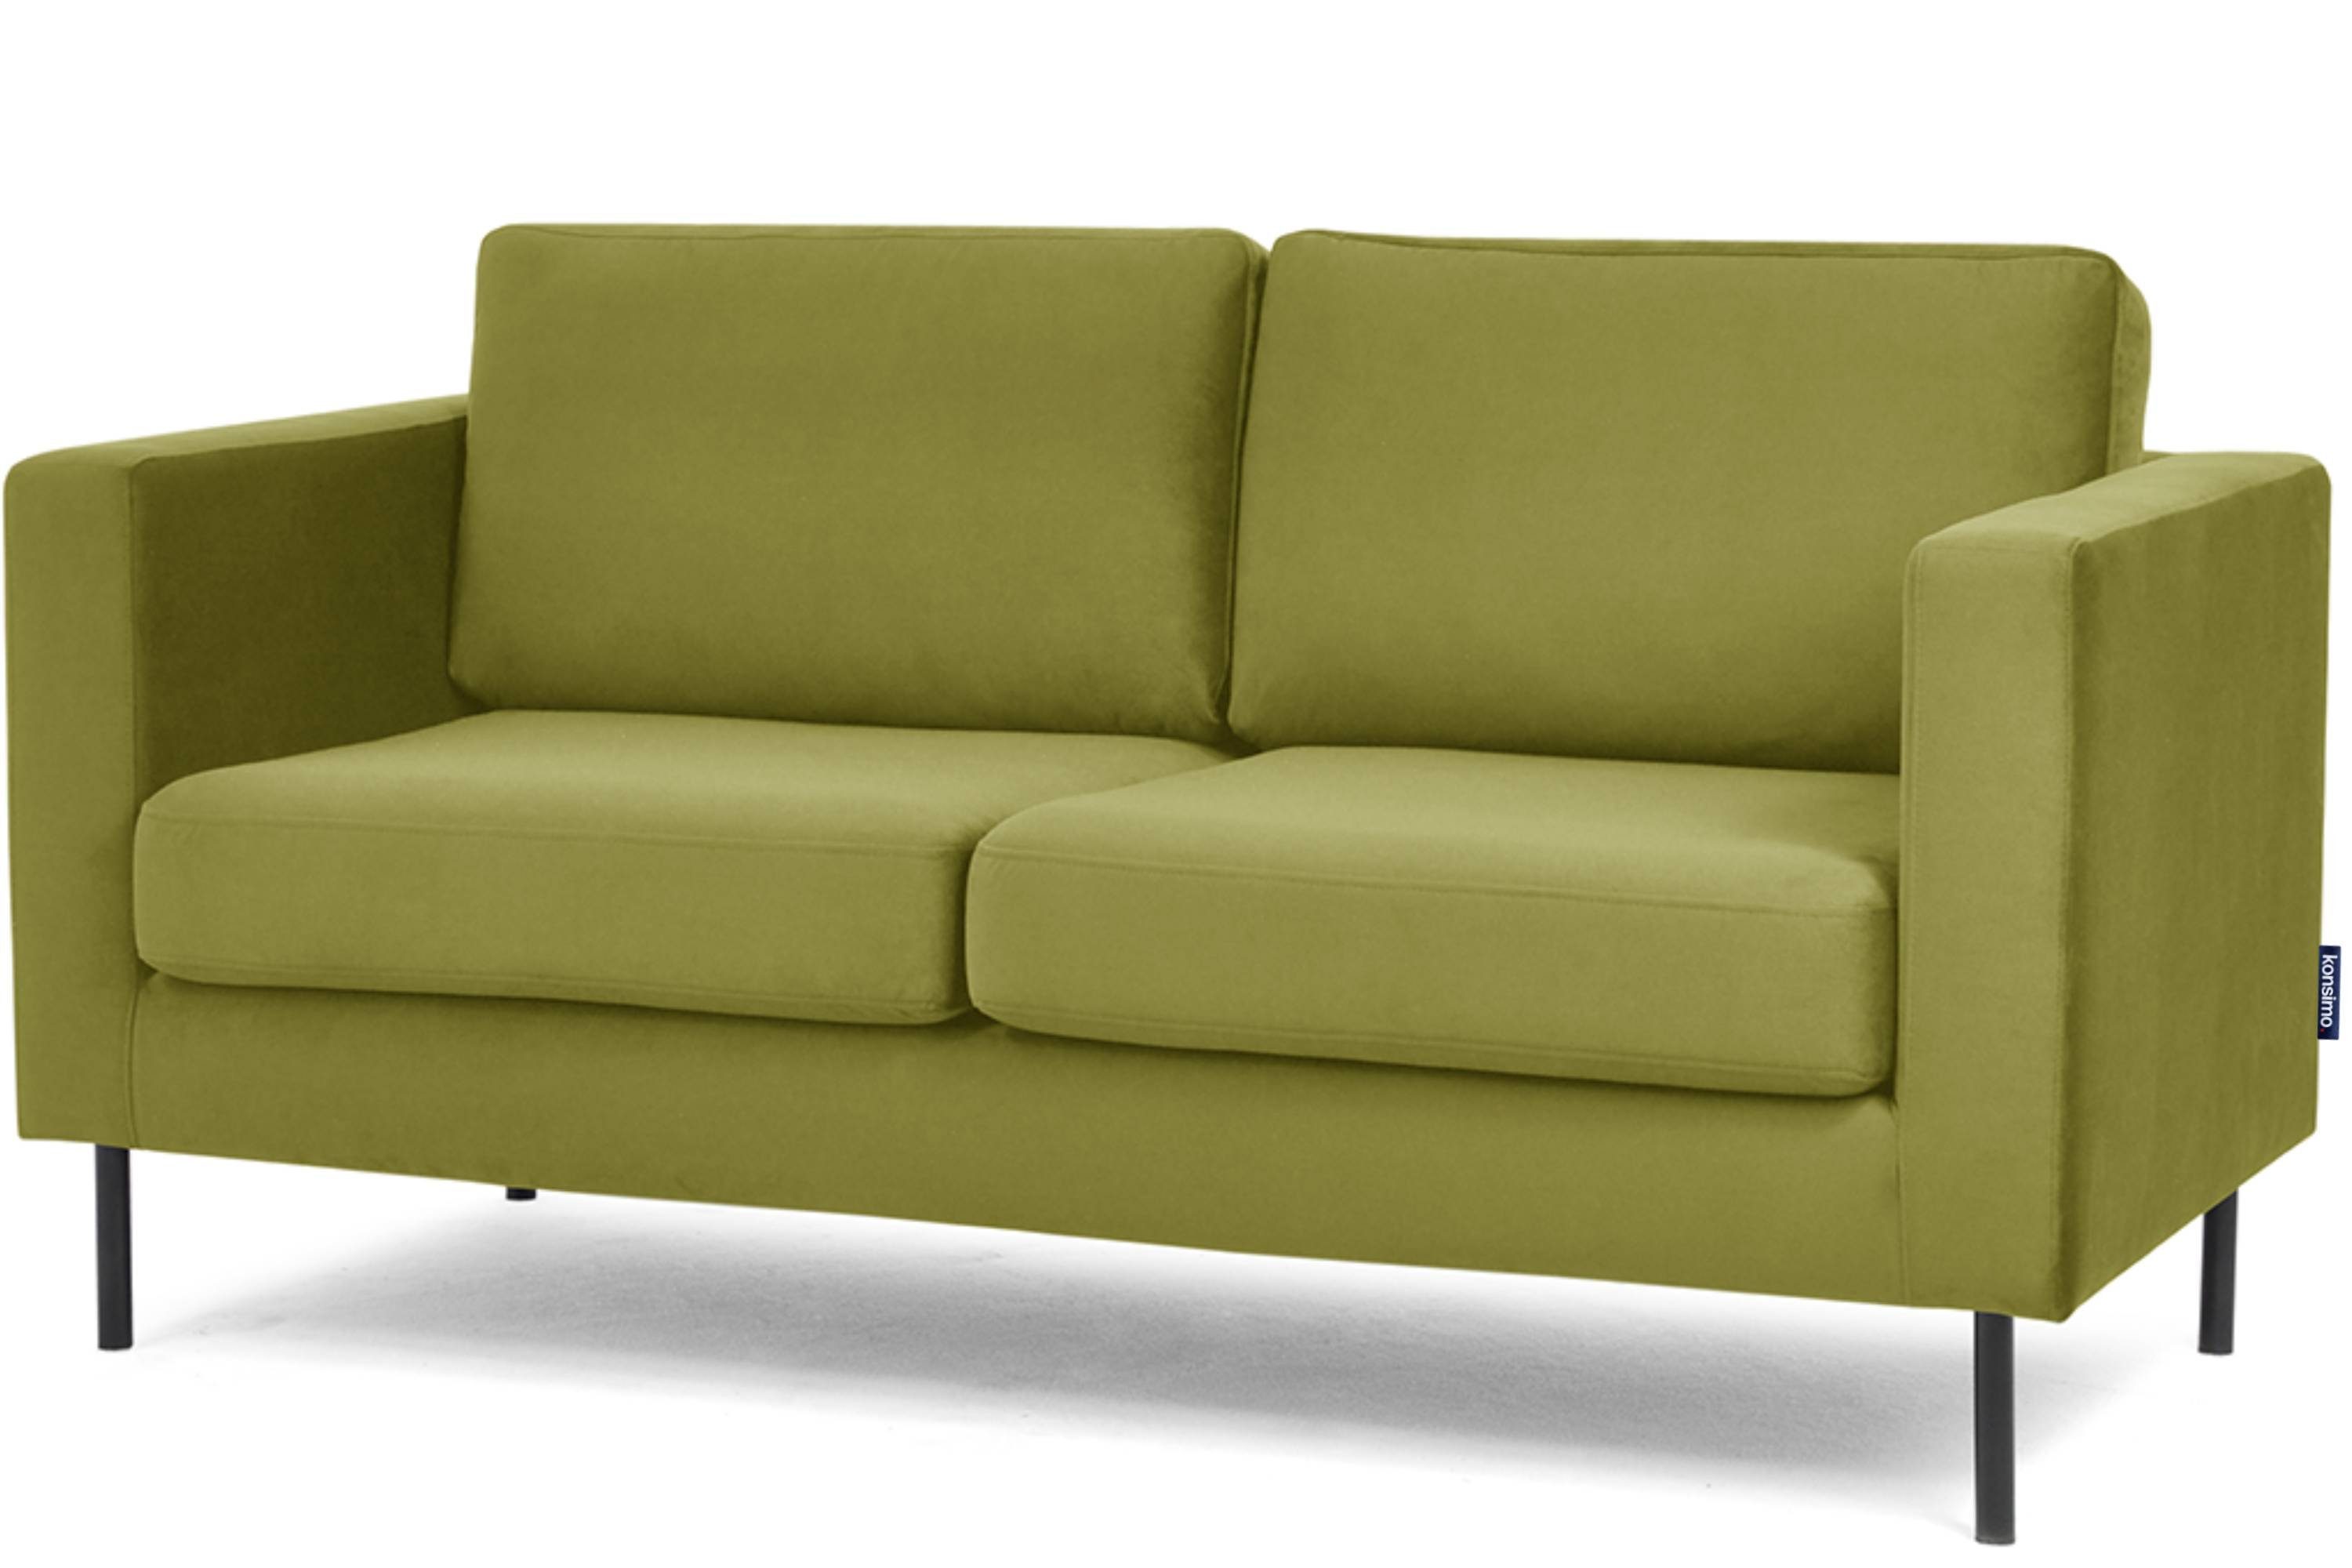 Konsimo 2-Sitzer TOZZI Sofa 2 | oliv hohe universelles oliv oliv Beine, Personen, Design 